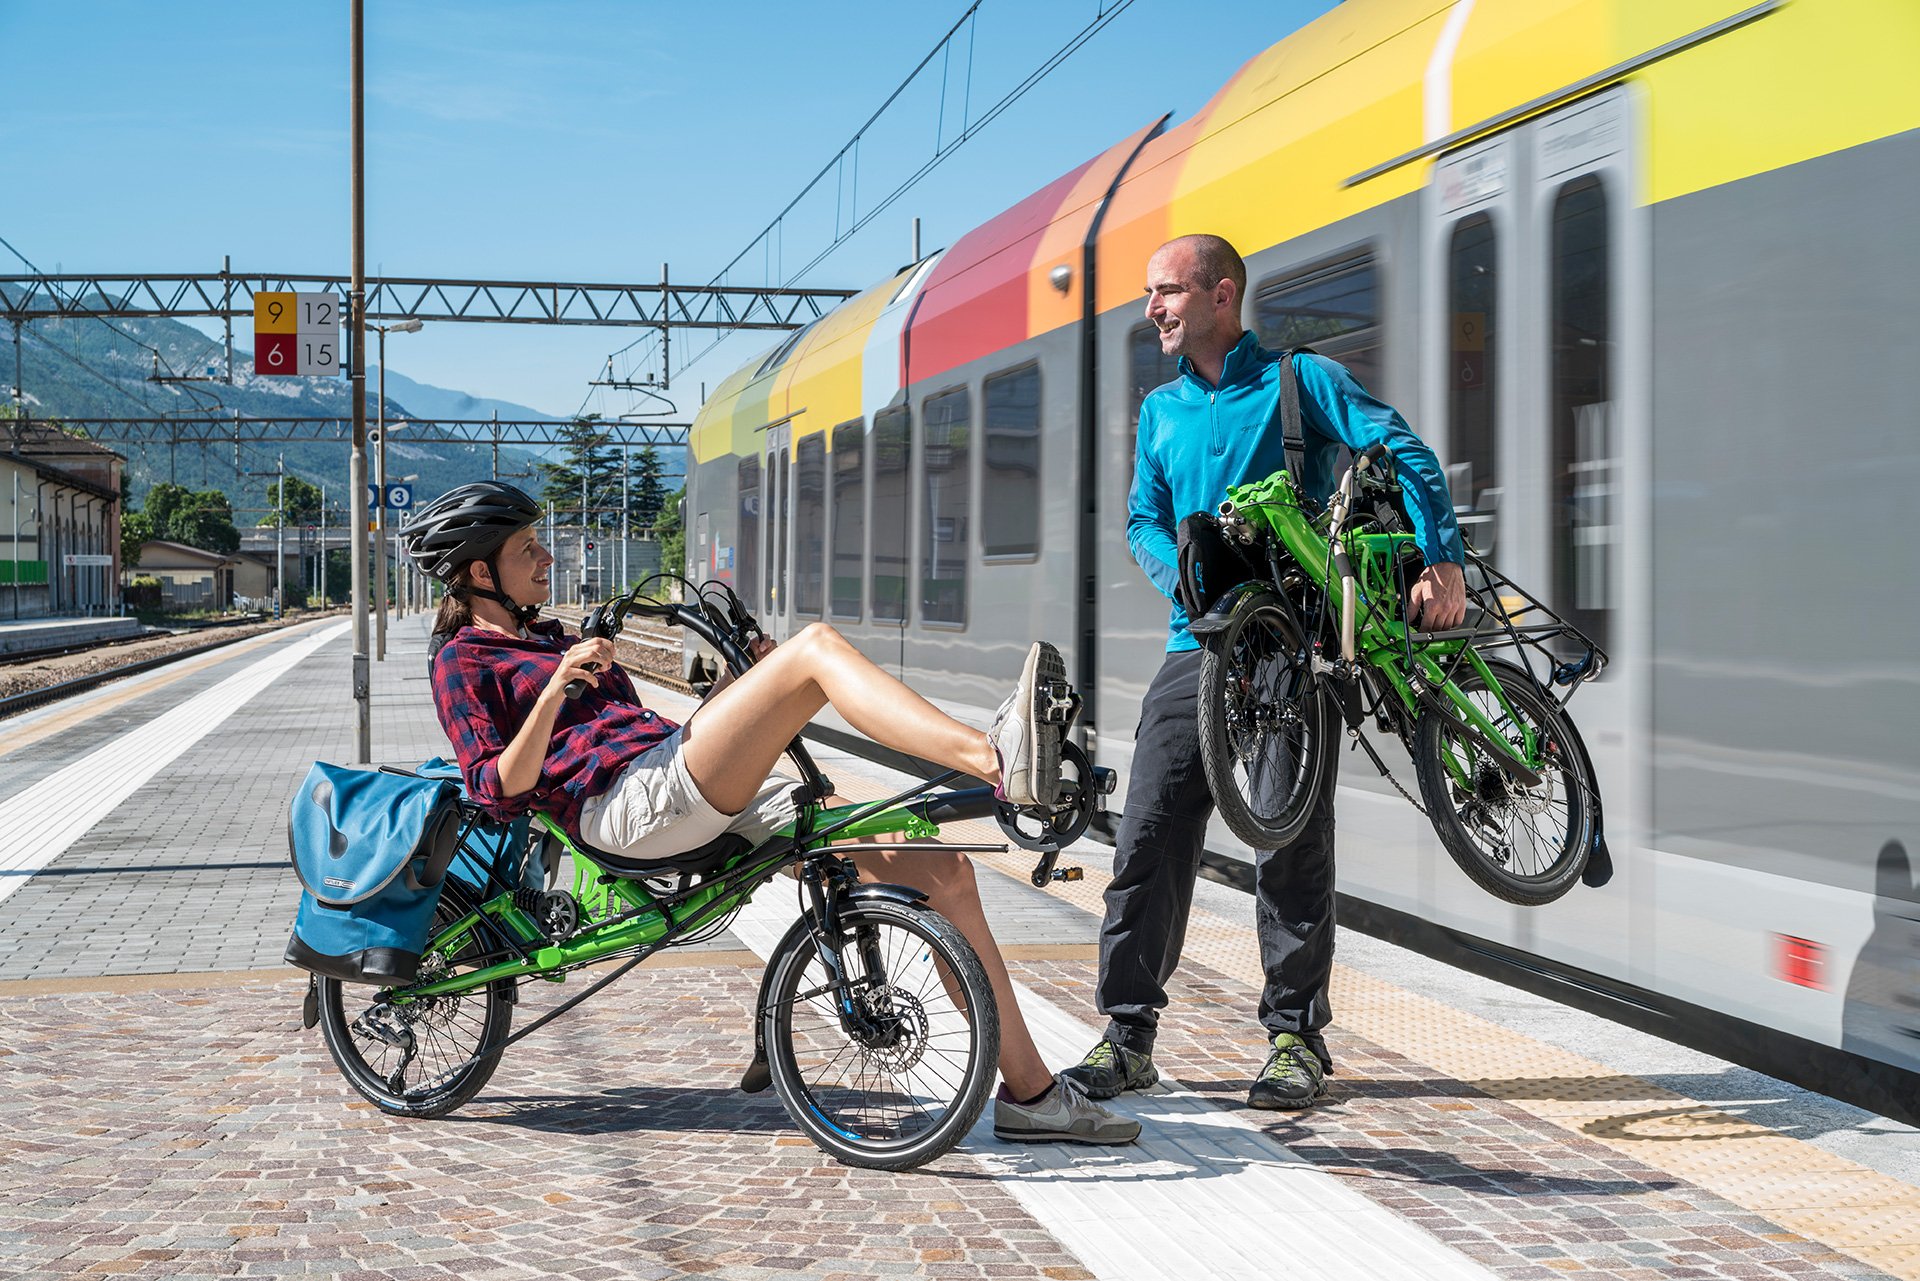 recumbent bike train transport grasshopper fx